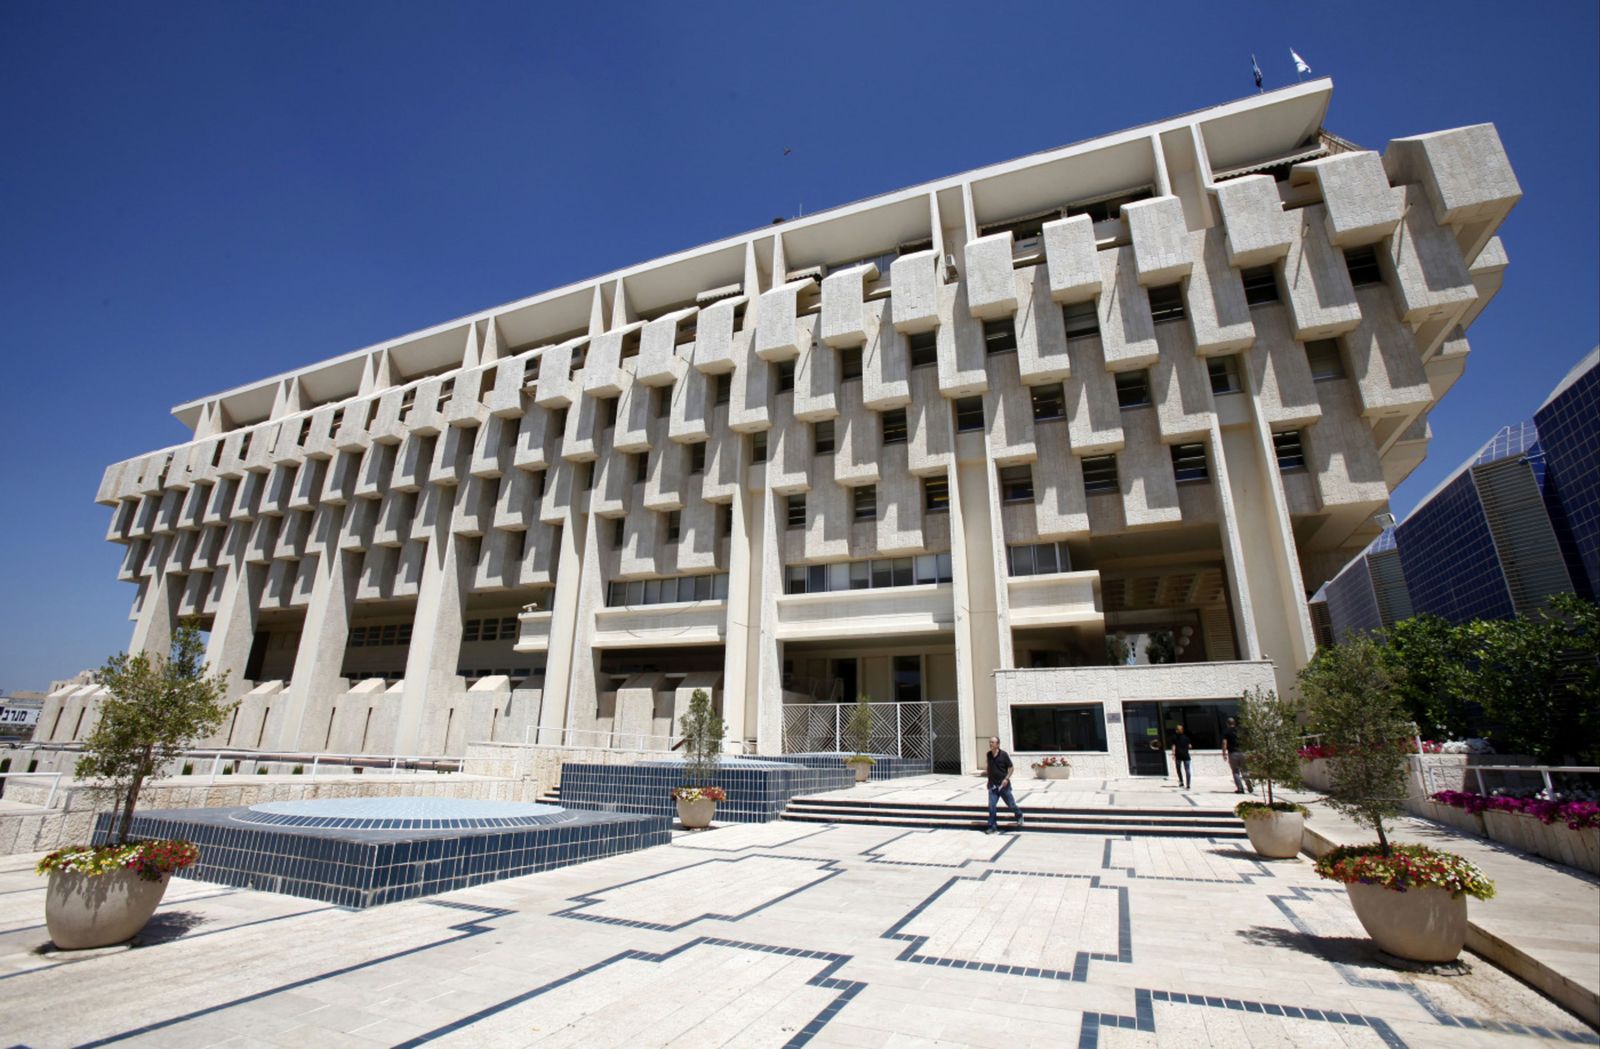 إسرائيل ترفع الفائدة مرة أخرى في أول دورة تشديد منذ 2011